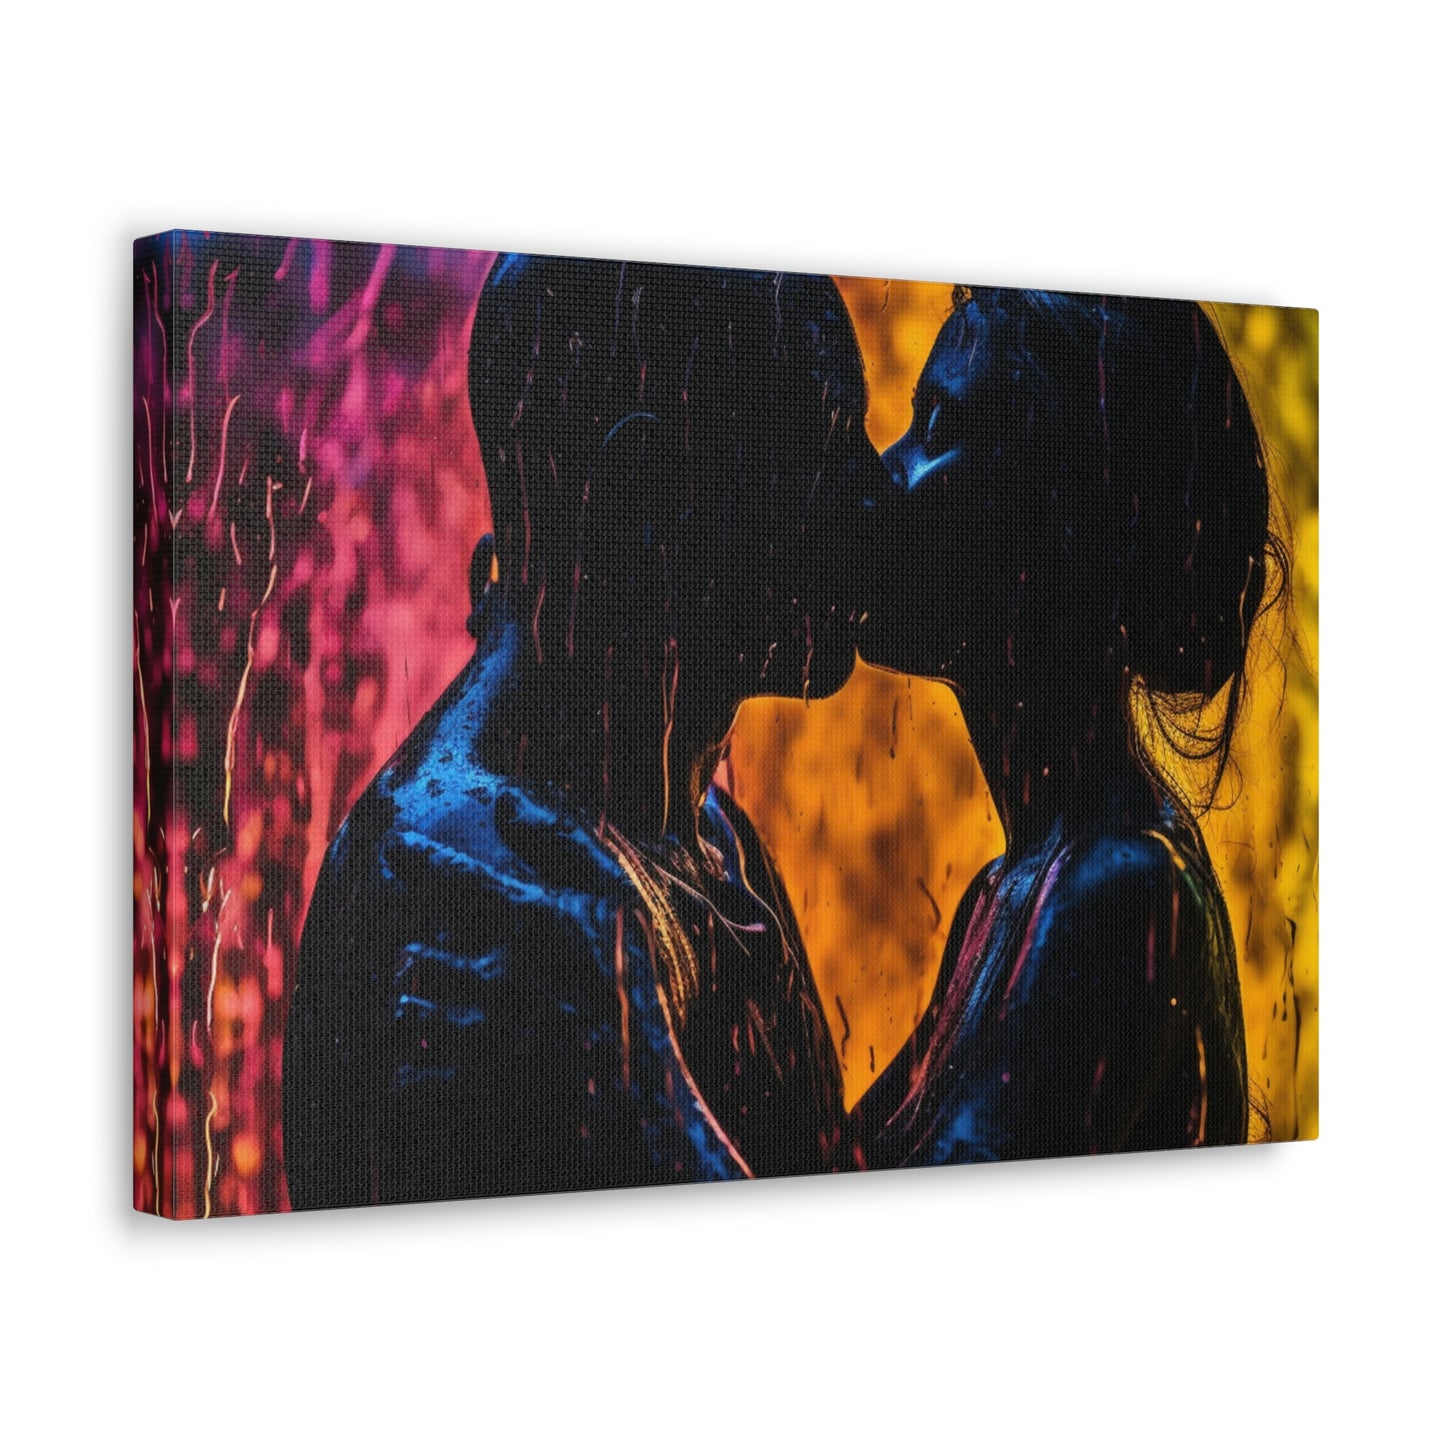 Canvas Gallery Wraps Florescent Rain 2